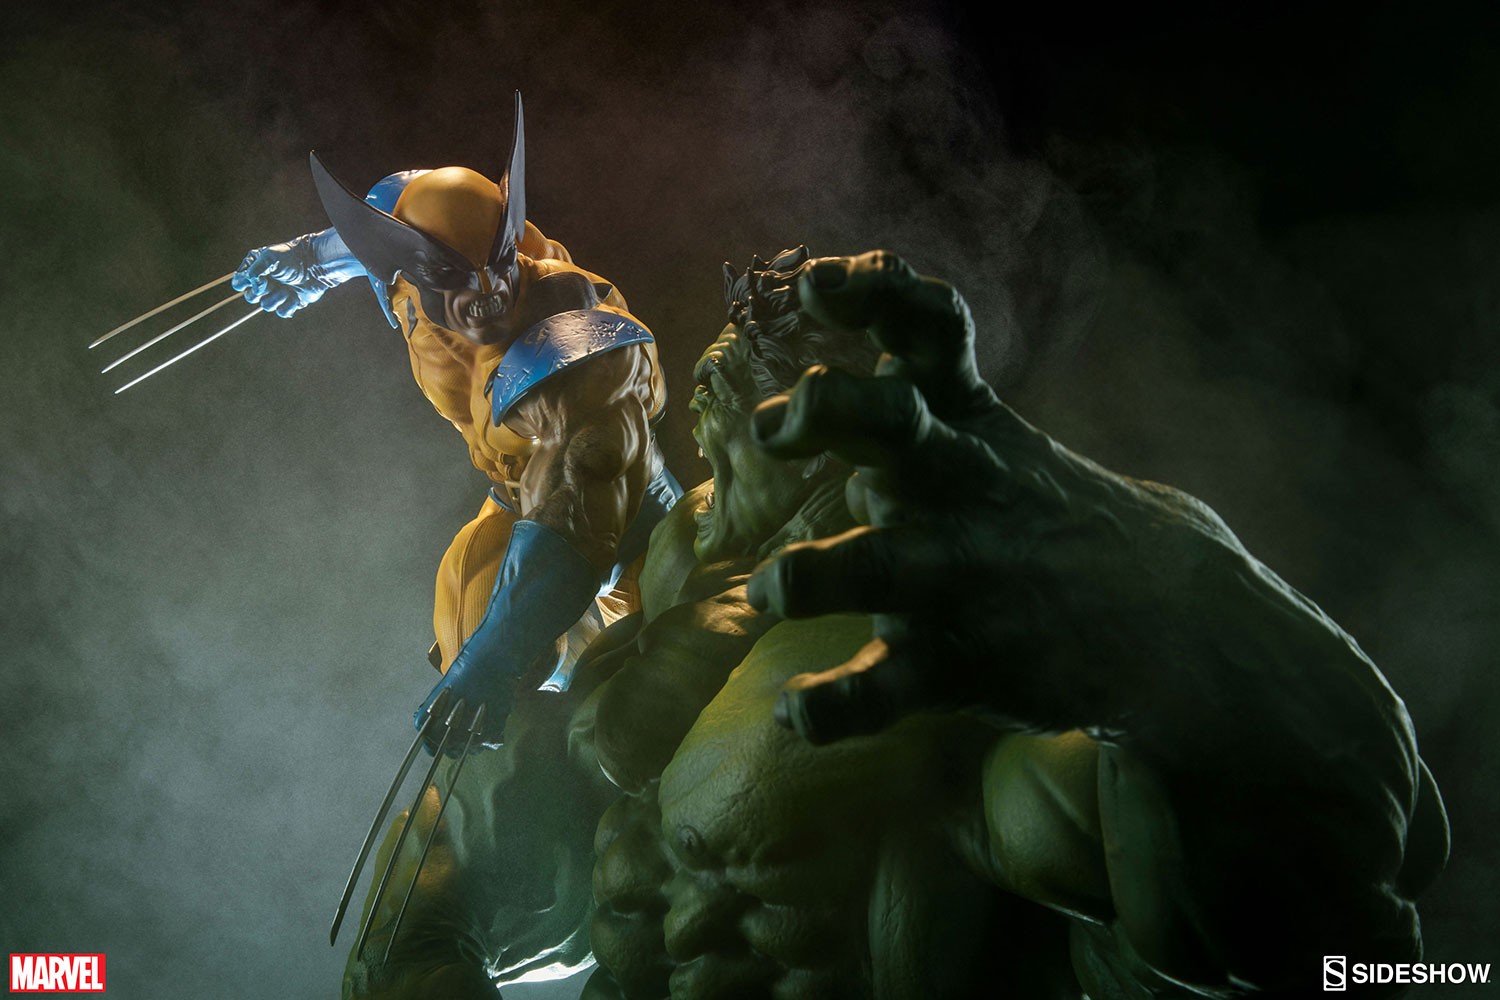 Hulk and Wolverine